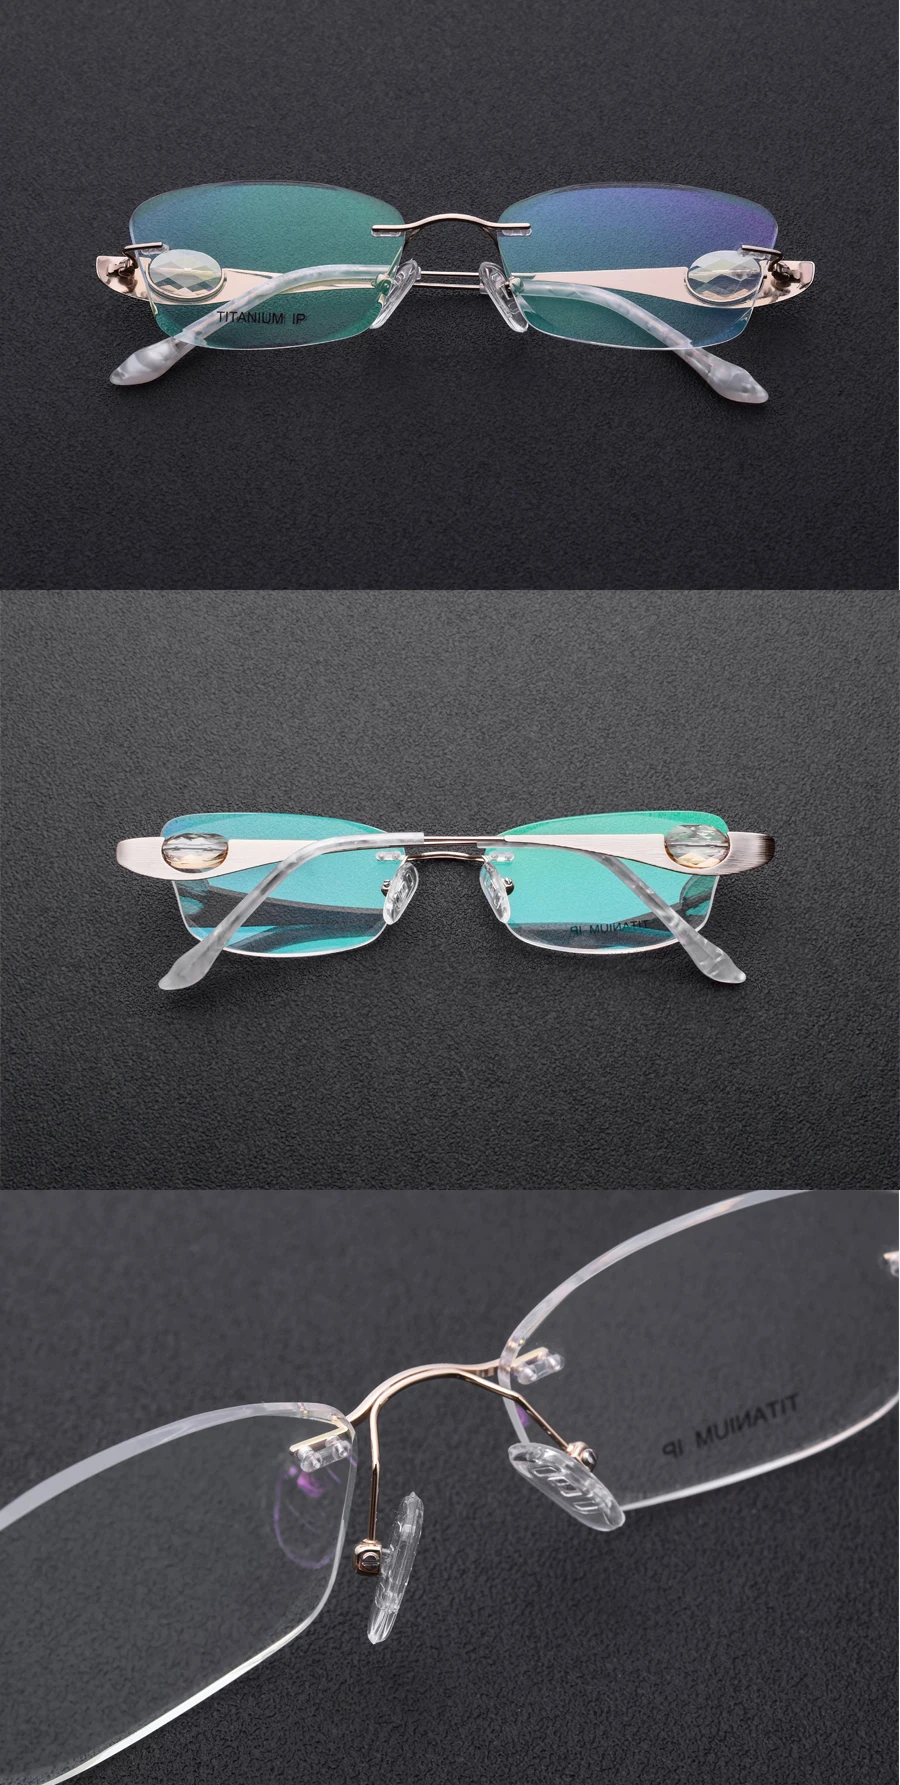 Титановые Золотые женские очки с кристальными бриллиантами, прозрачные линзы, линзы могут быть заменены, размер 54-17-135мм